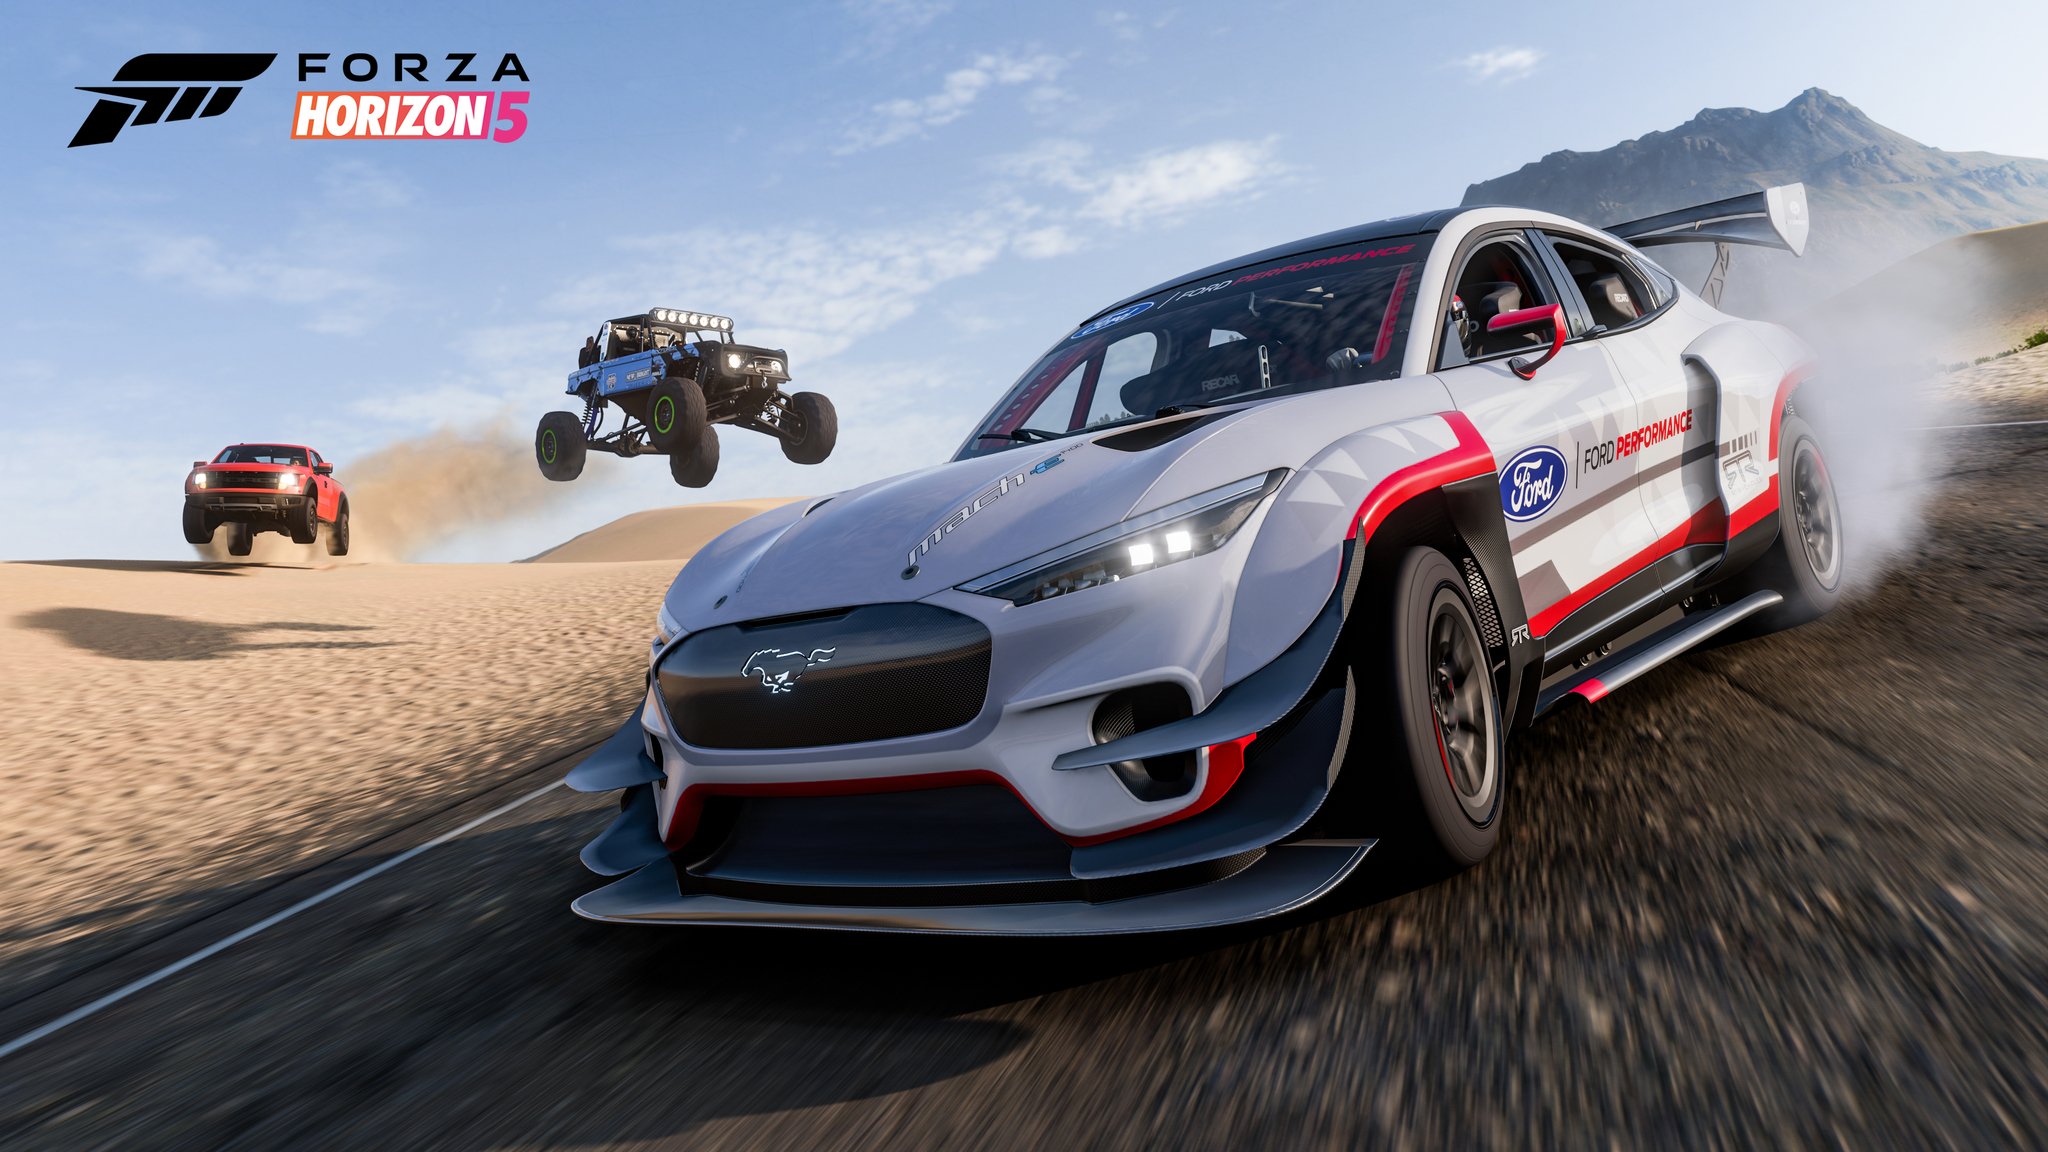 La mise à jour Forza Horizon 5 Series 6 arrive avec de nouvelles voitures, des améliorations majeures dans les courses en ligne et plus encore